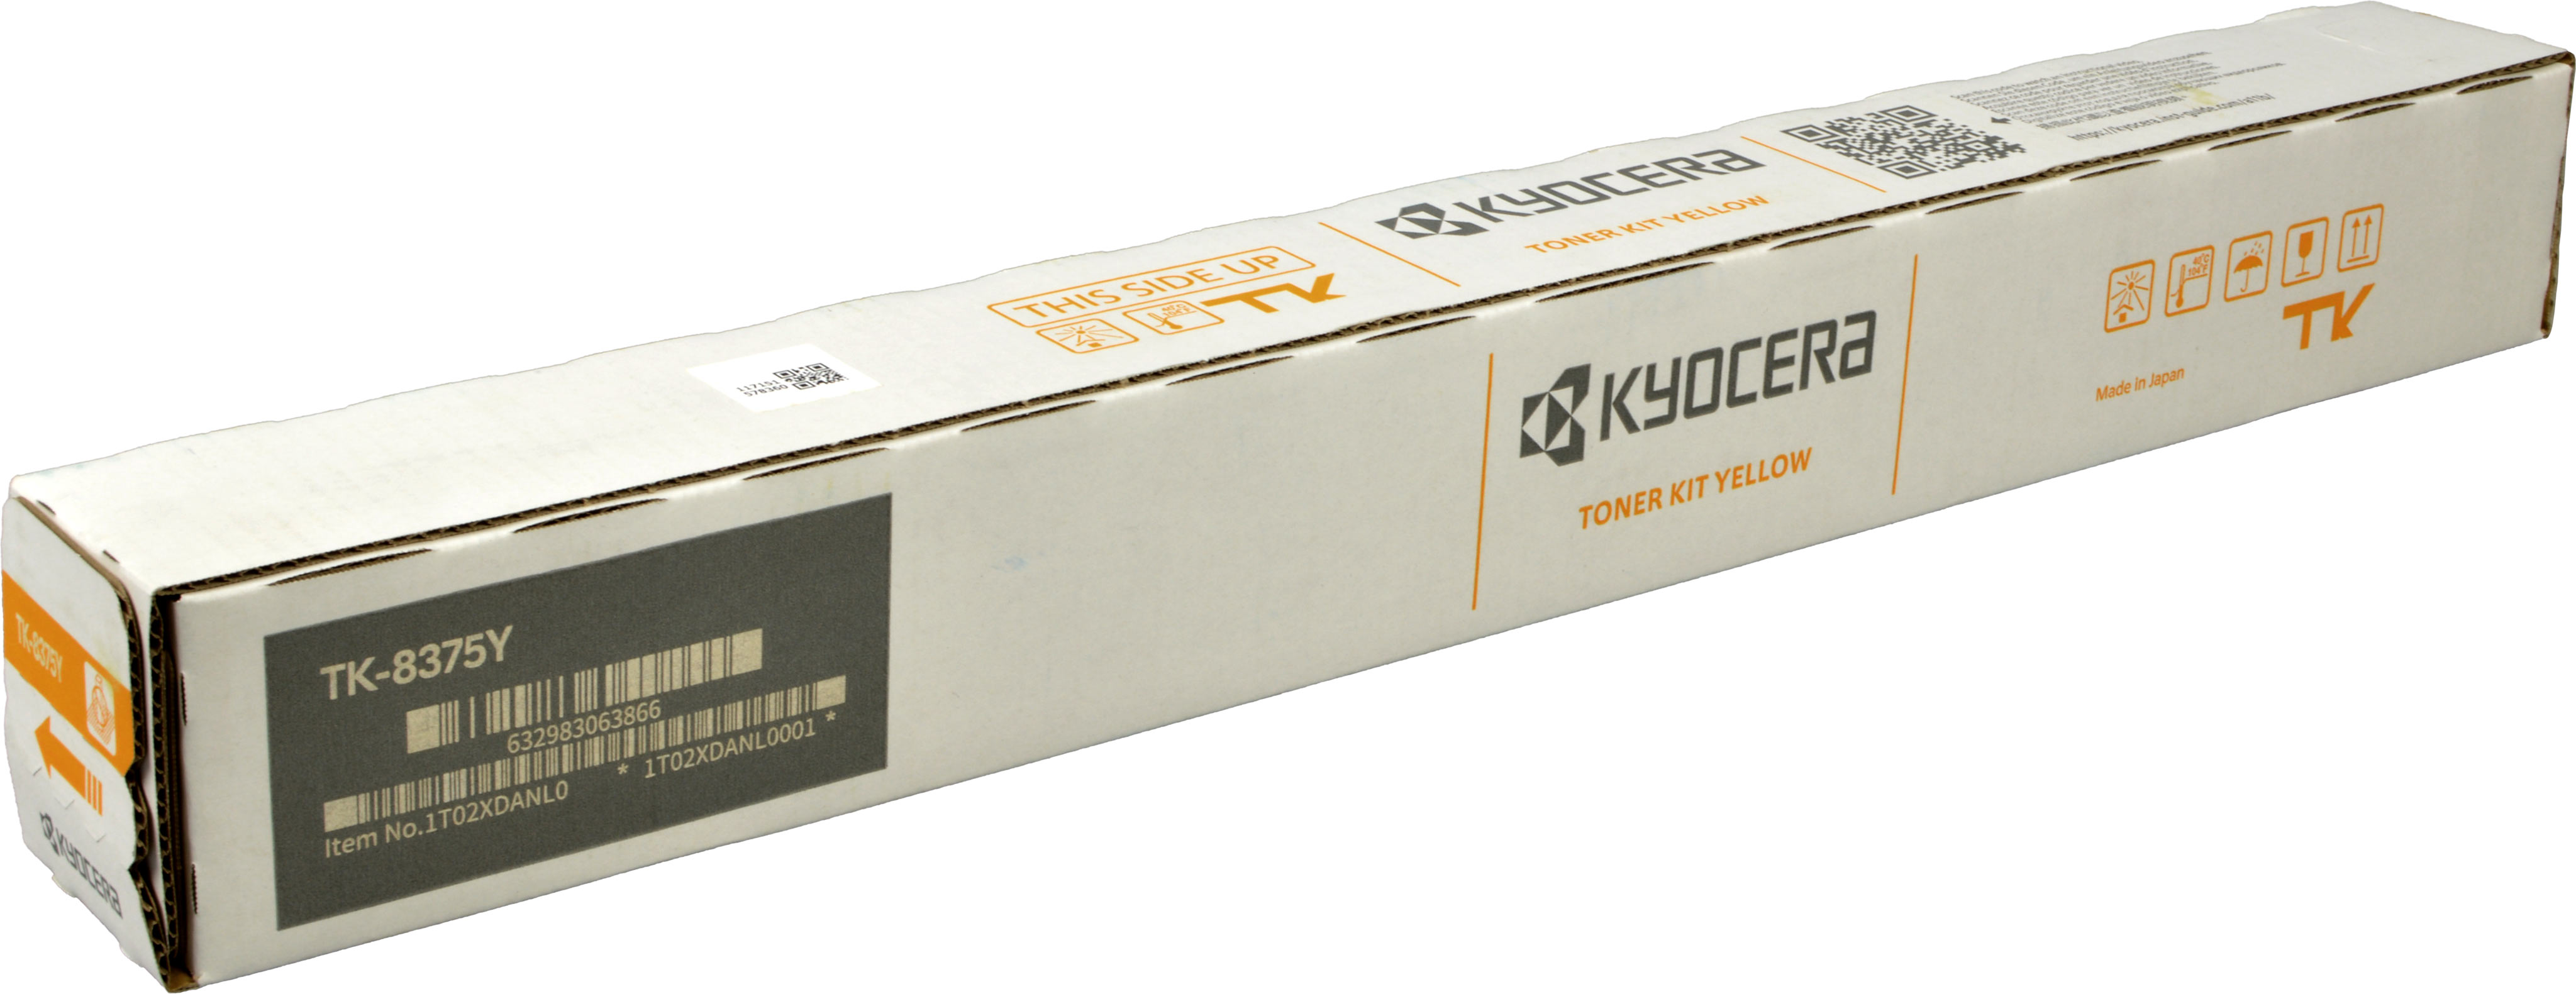 Kyocera Toner TK-8375Y  1T02XDANL0  yellow